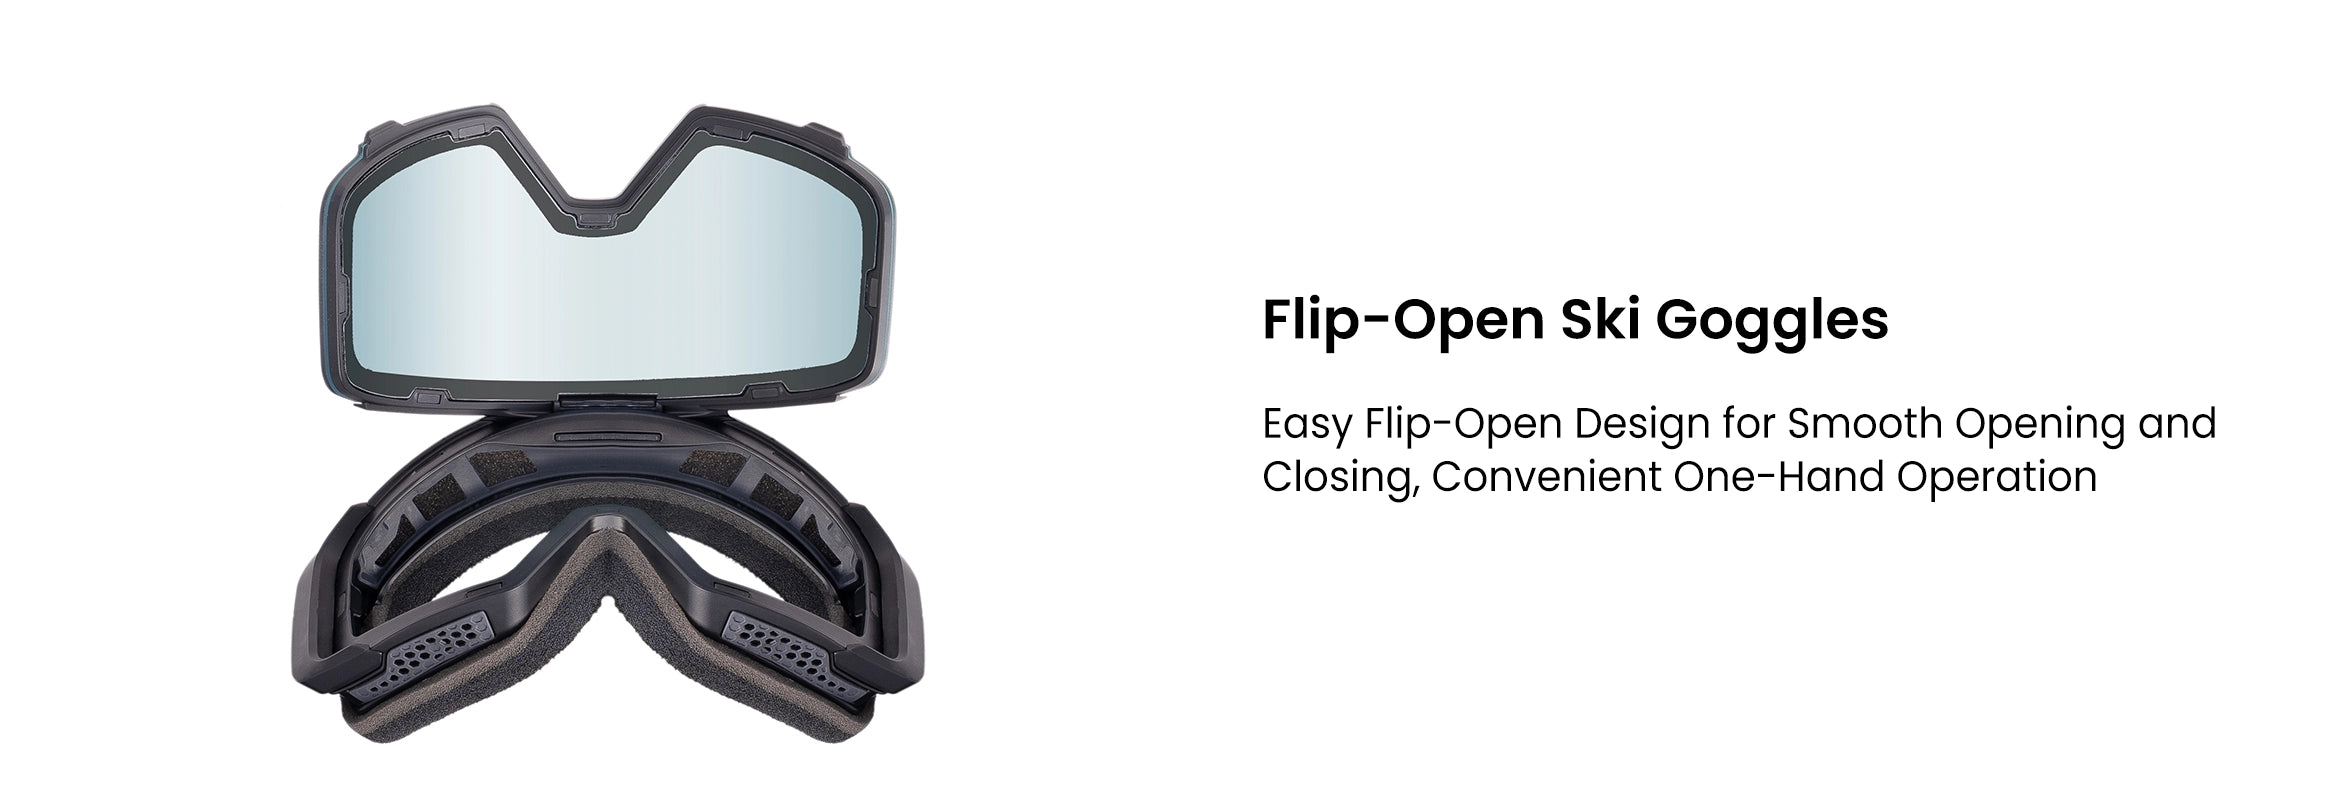 2. Flip-Open Ski Goggles